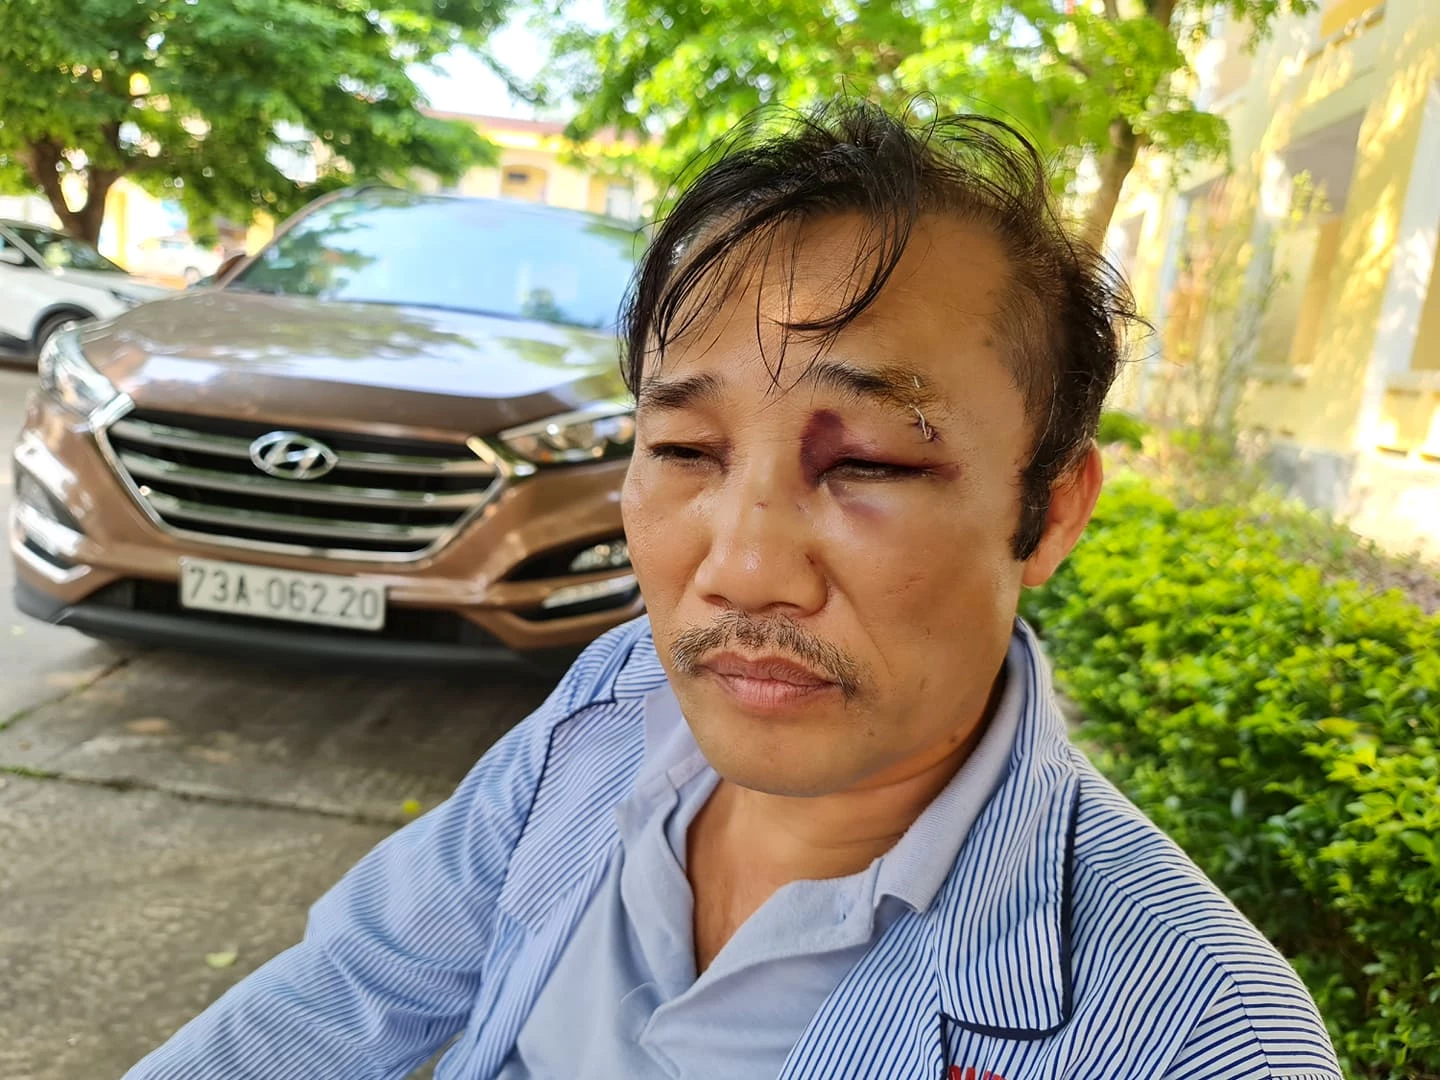 Kết quả chụp X- Quang chẩn đoán ông Nguyễn Ngọc Nhất bị vỡ xương mũi, chấn động, vết thương vùng mắt.